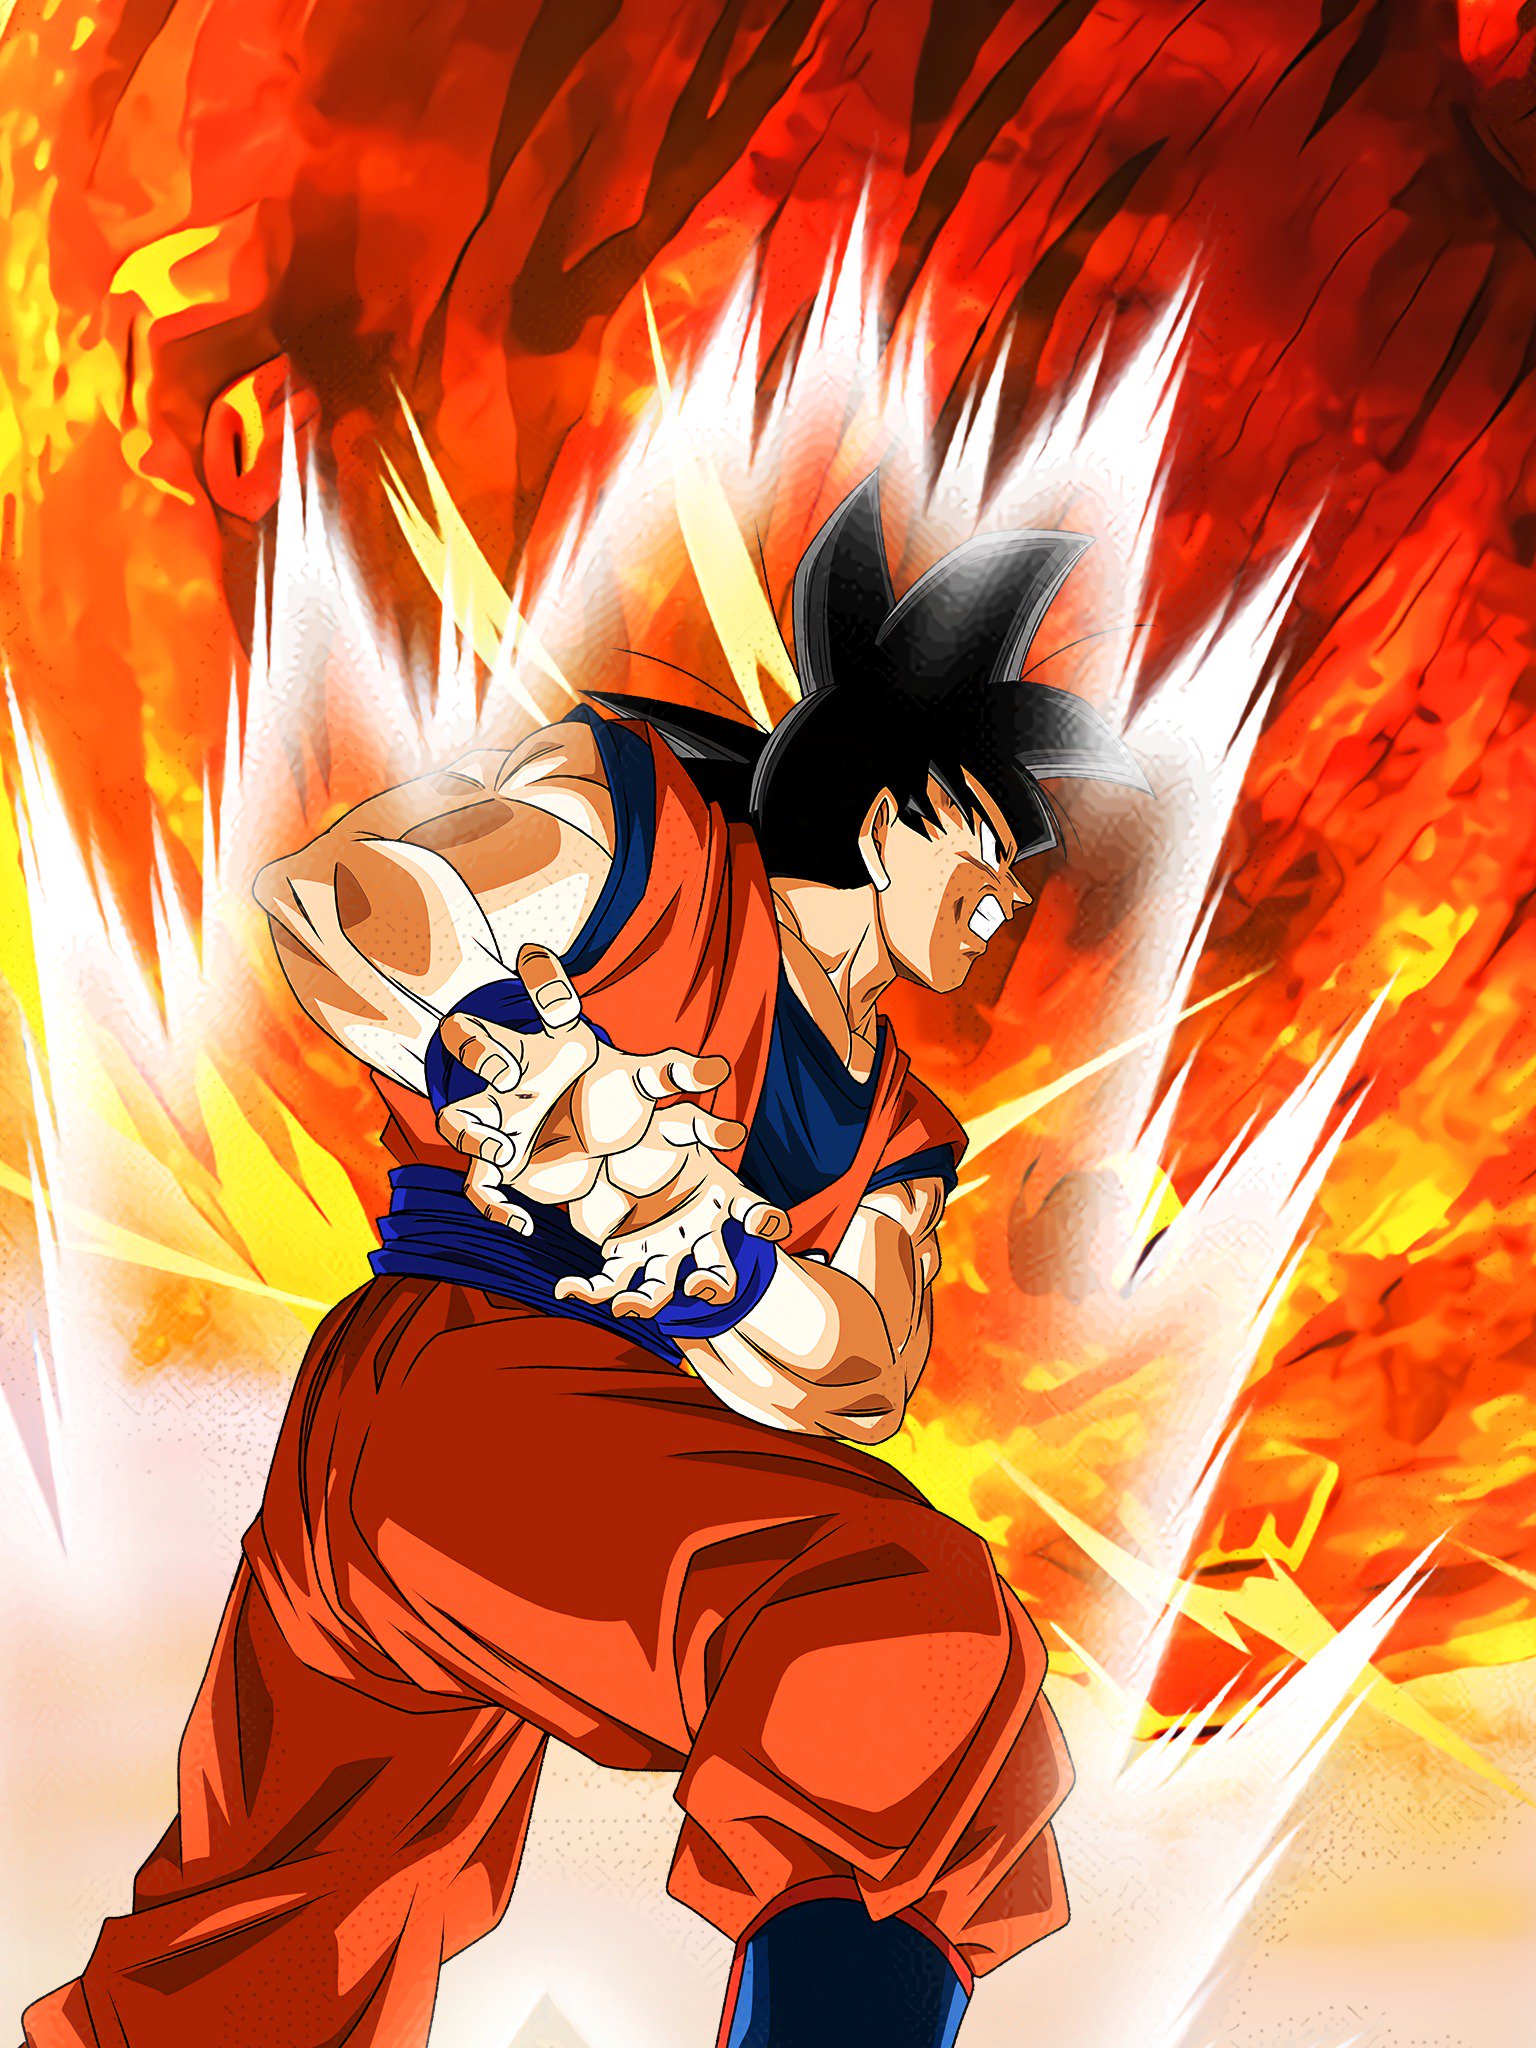 تويتر \ Hydros على تويتر: Here is the full HD version of the Pull Down Screen with Base Form and Super Saiyan Goku! Could make for a nice wallpaper :) #DokkanBattle Goku